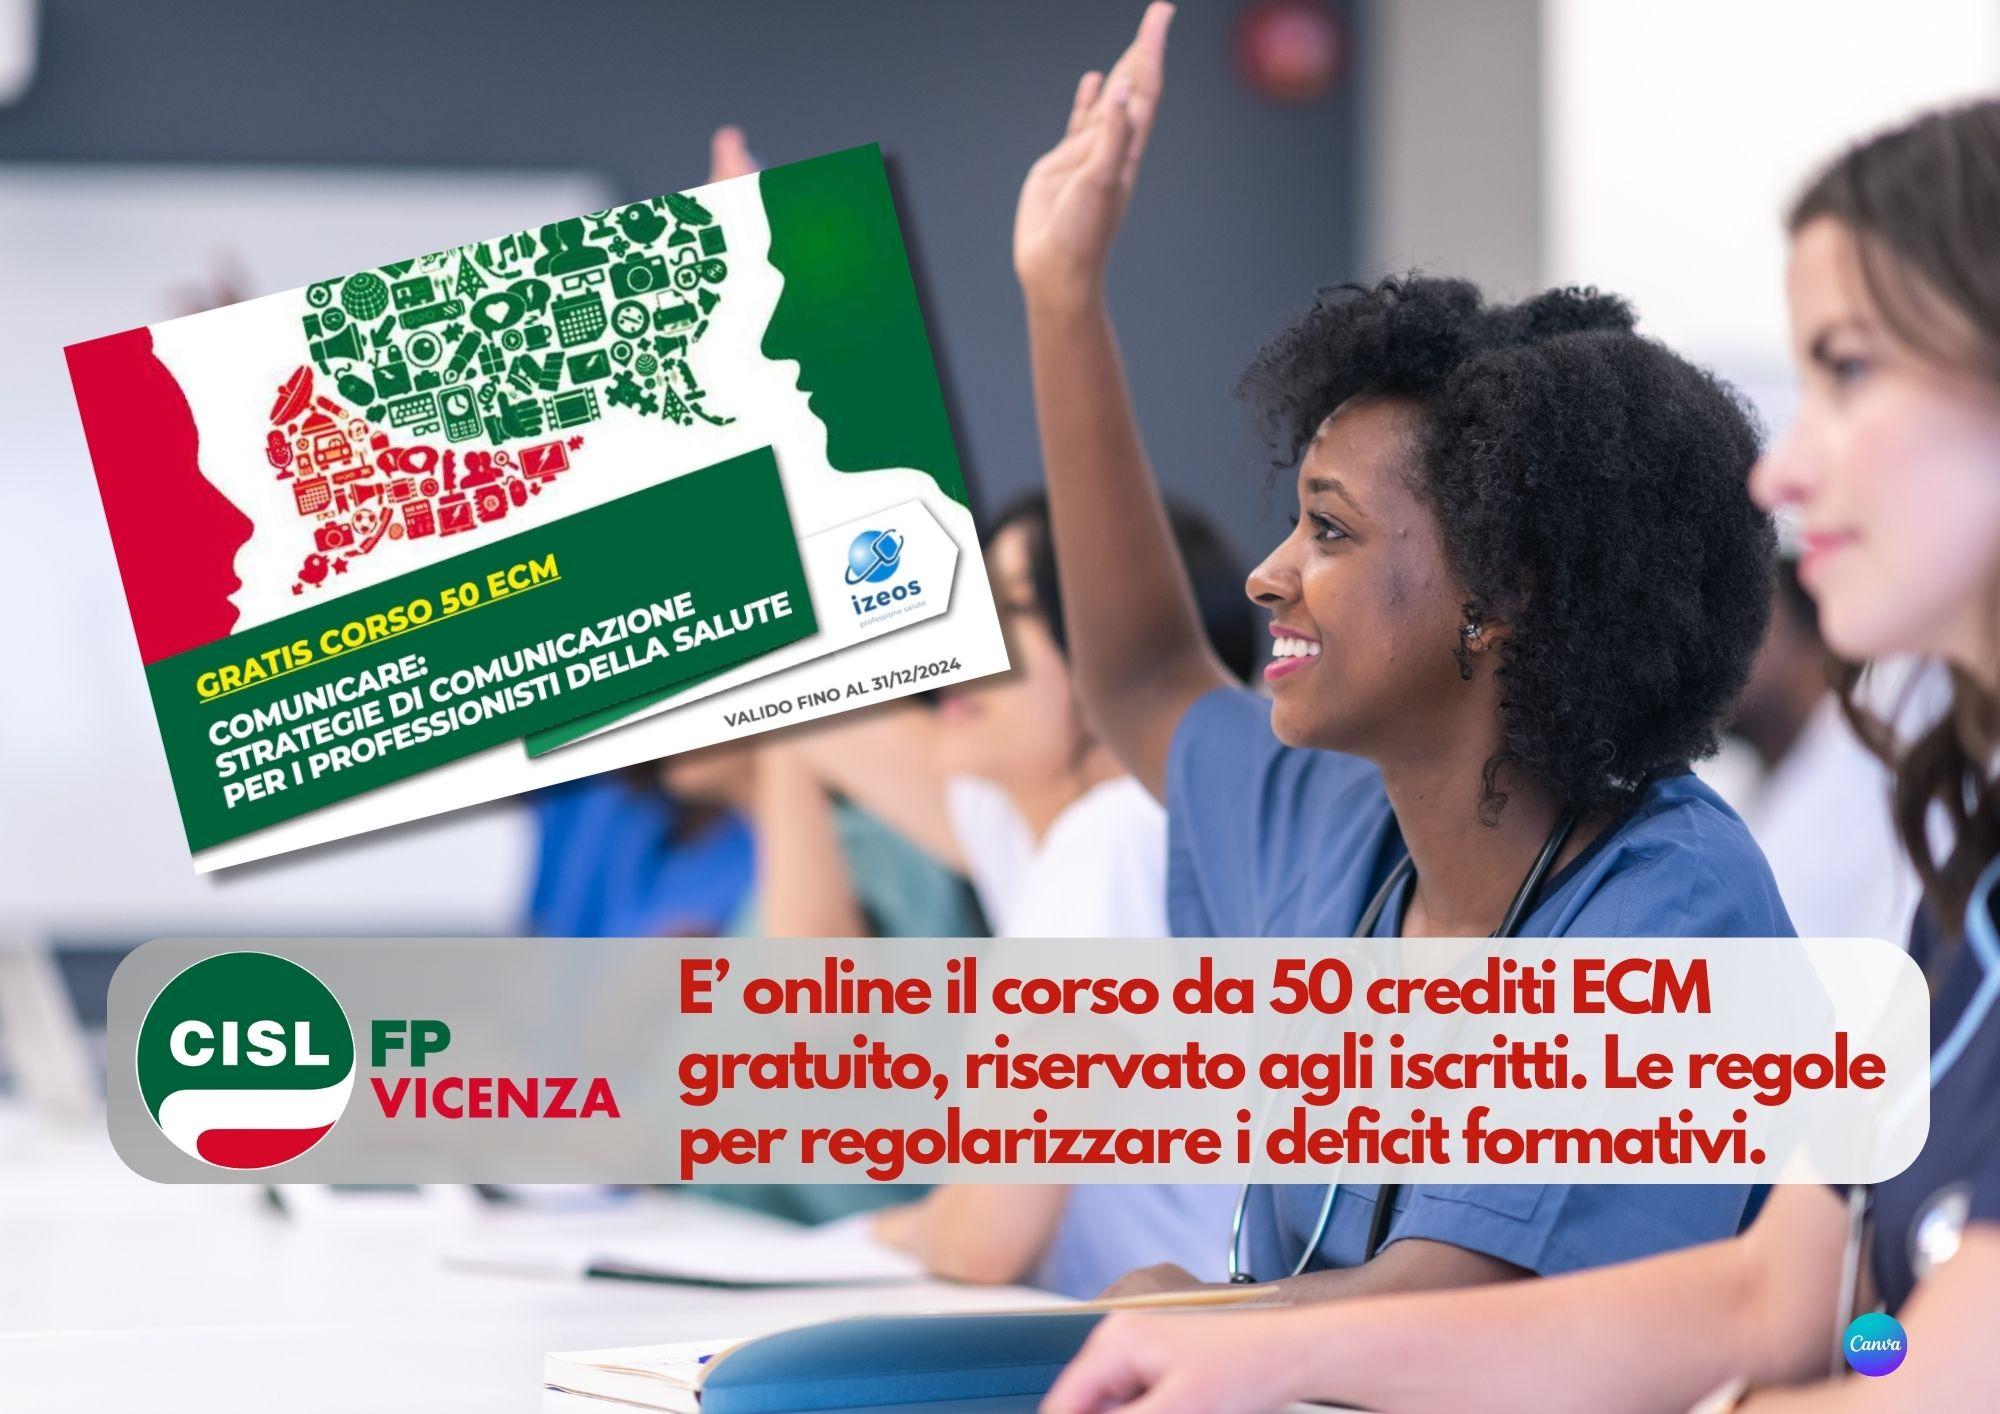 CISL FP Vicenza. Percorso formativo ECM da 50 crediti gratis per gli iscritti. Regole per i crediti